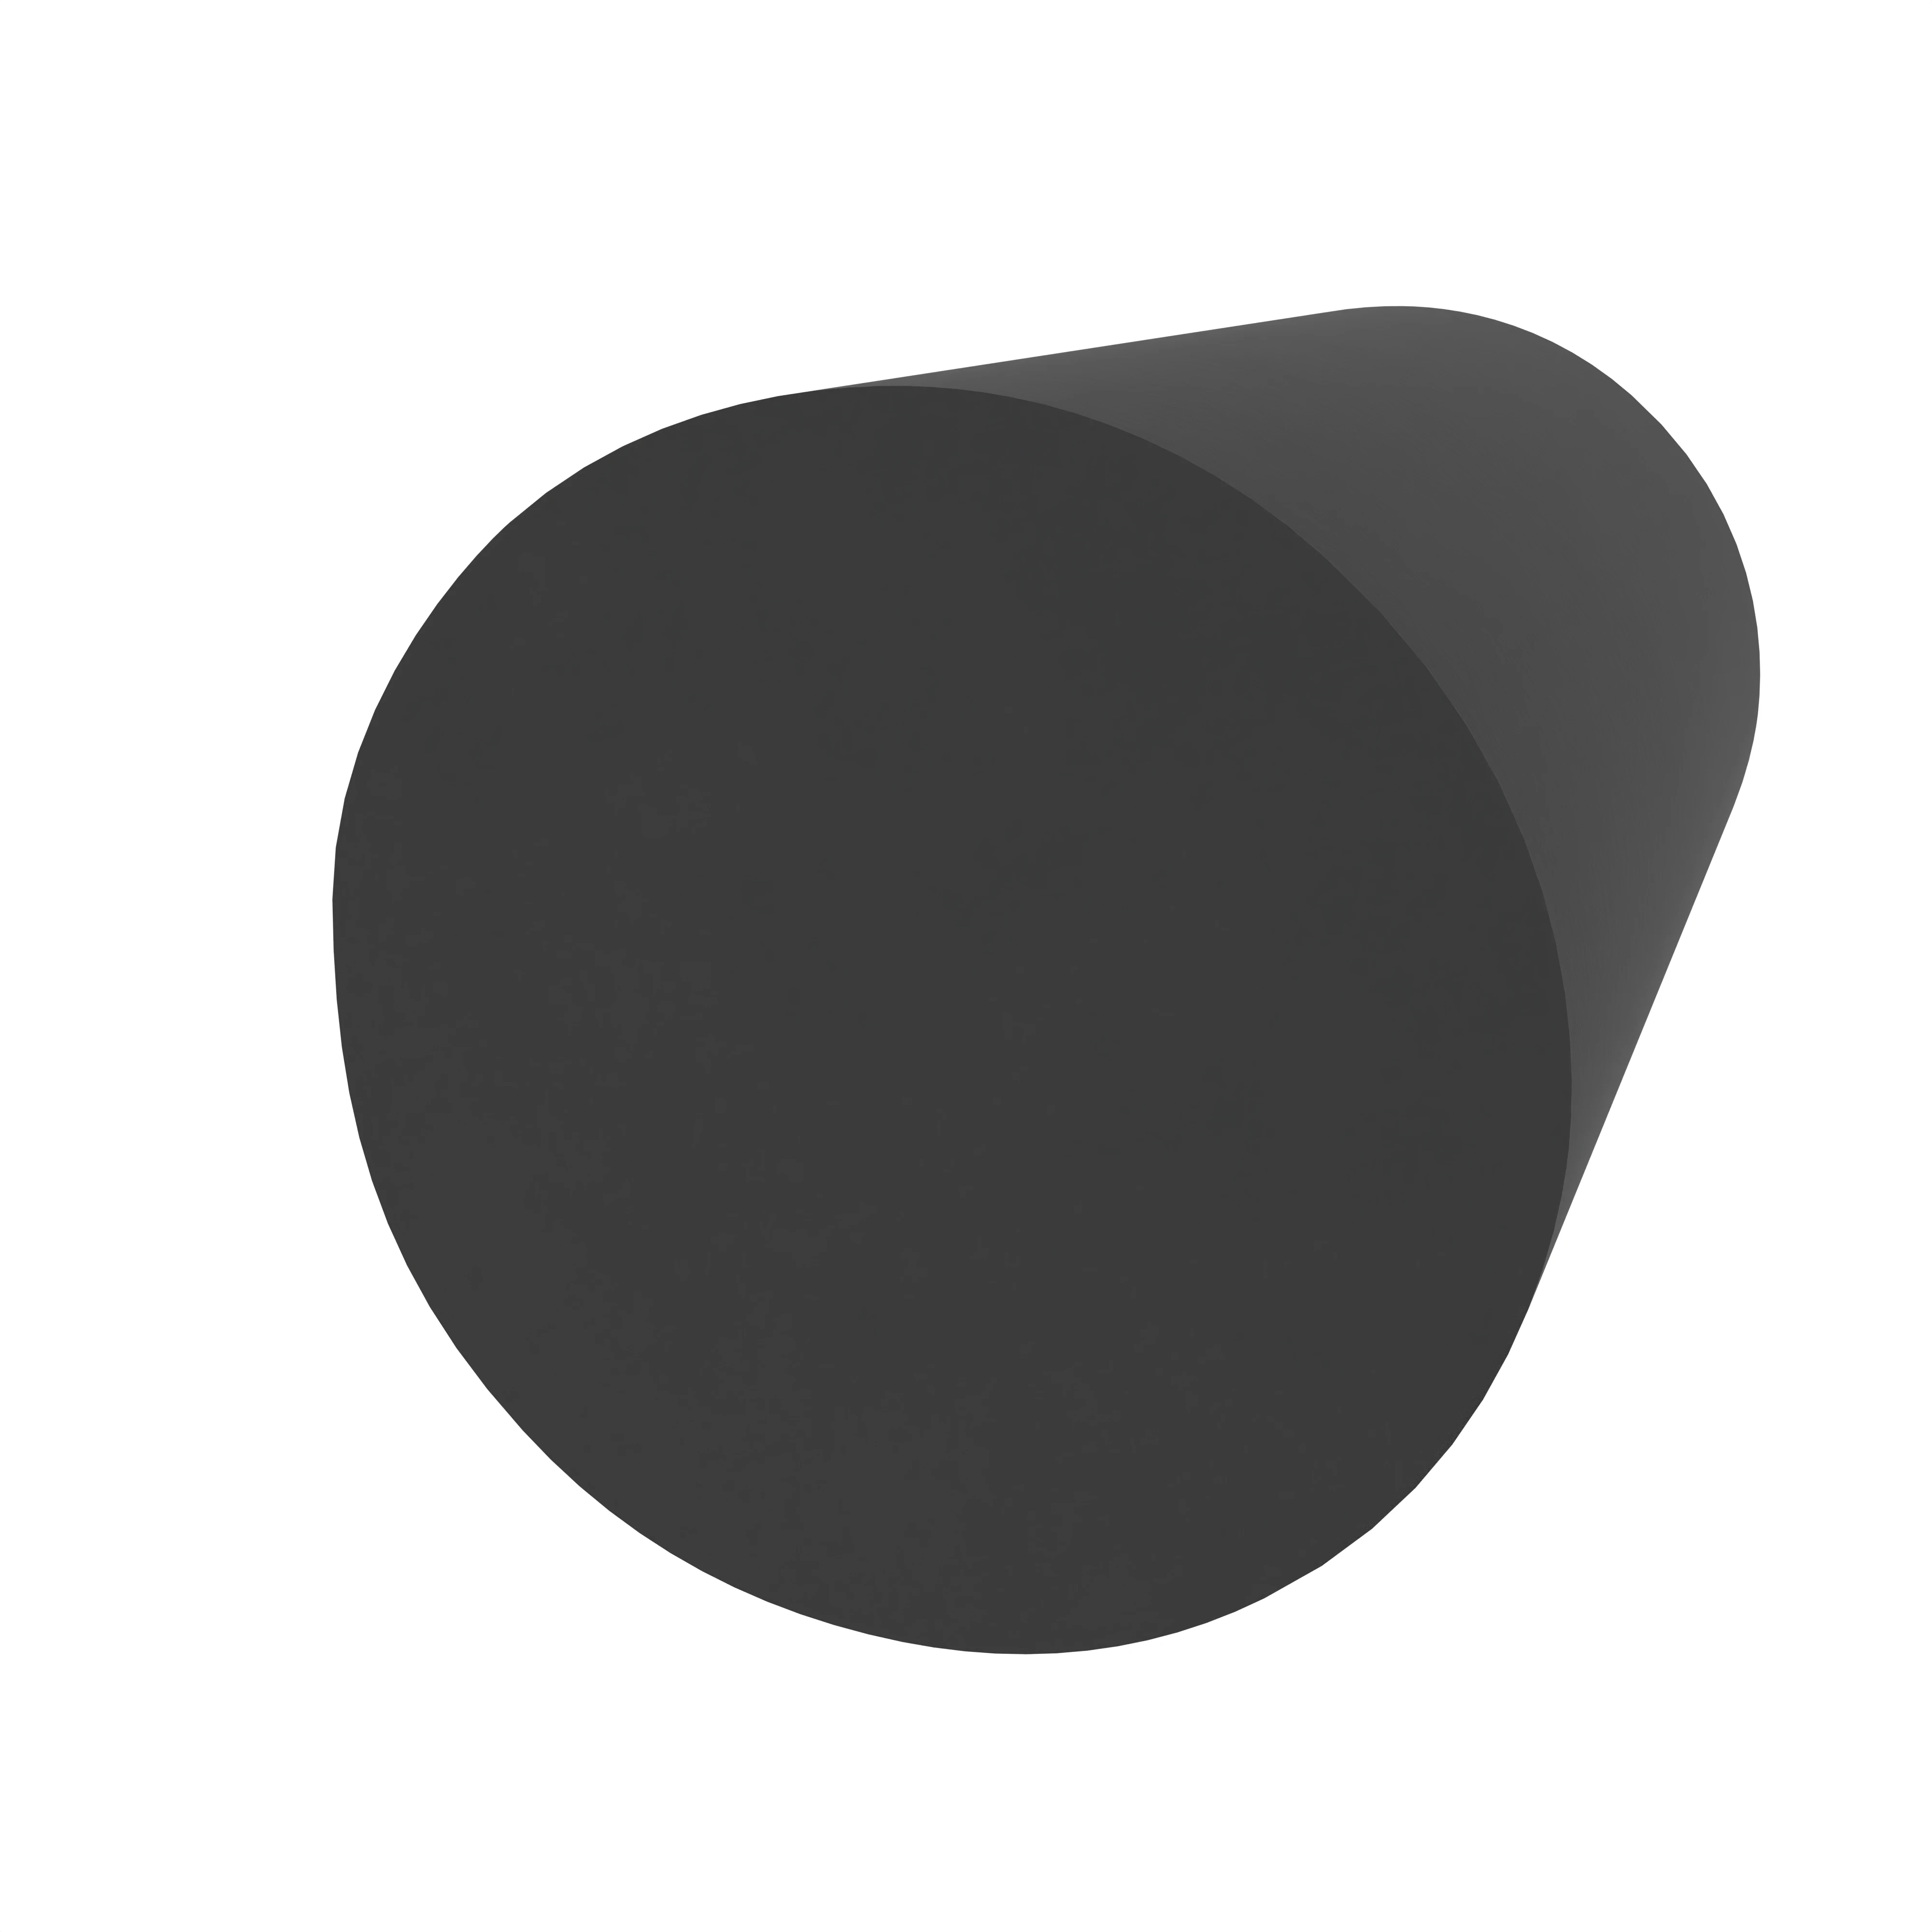 Moosgummidichtung rund | 6 mm Durchmesser | Farbe: schwarz